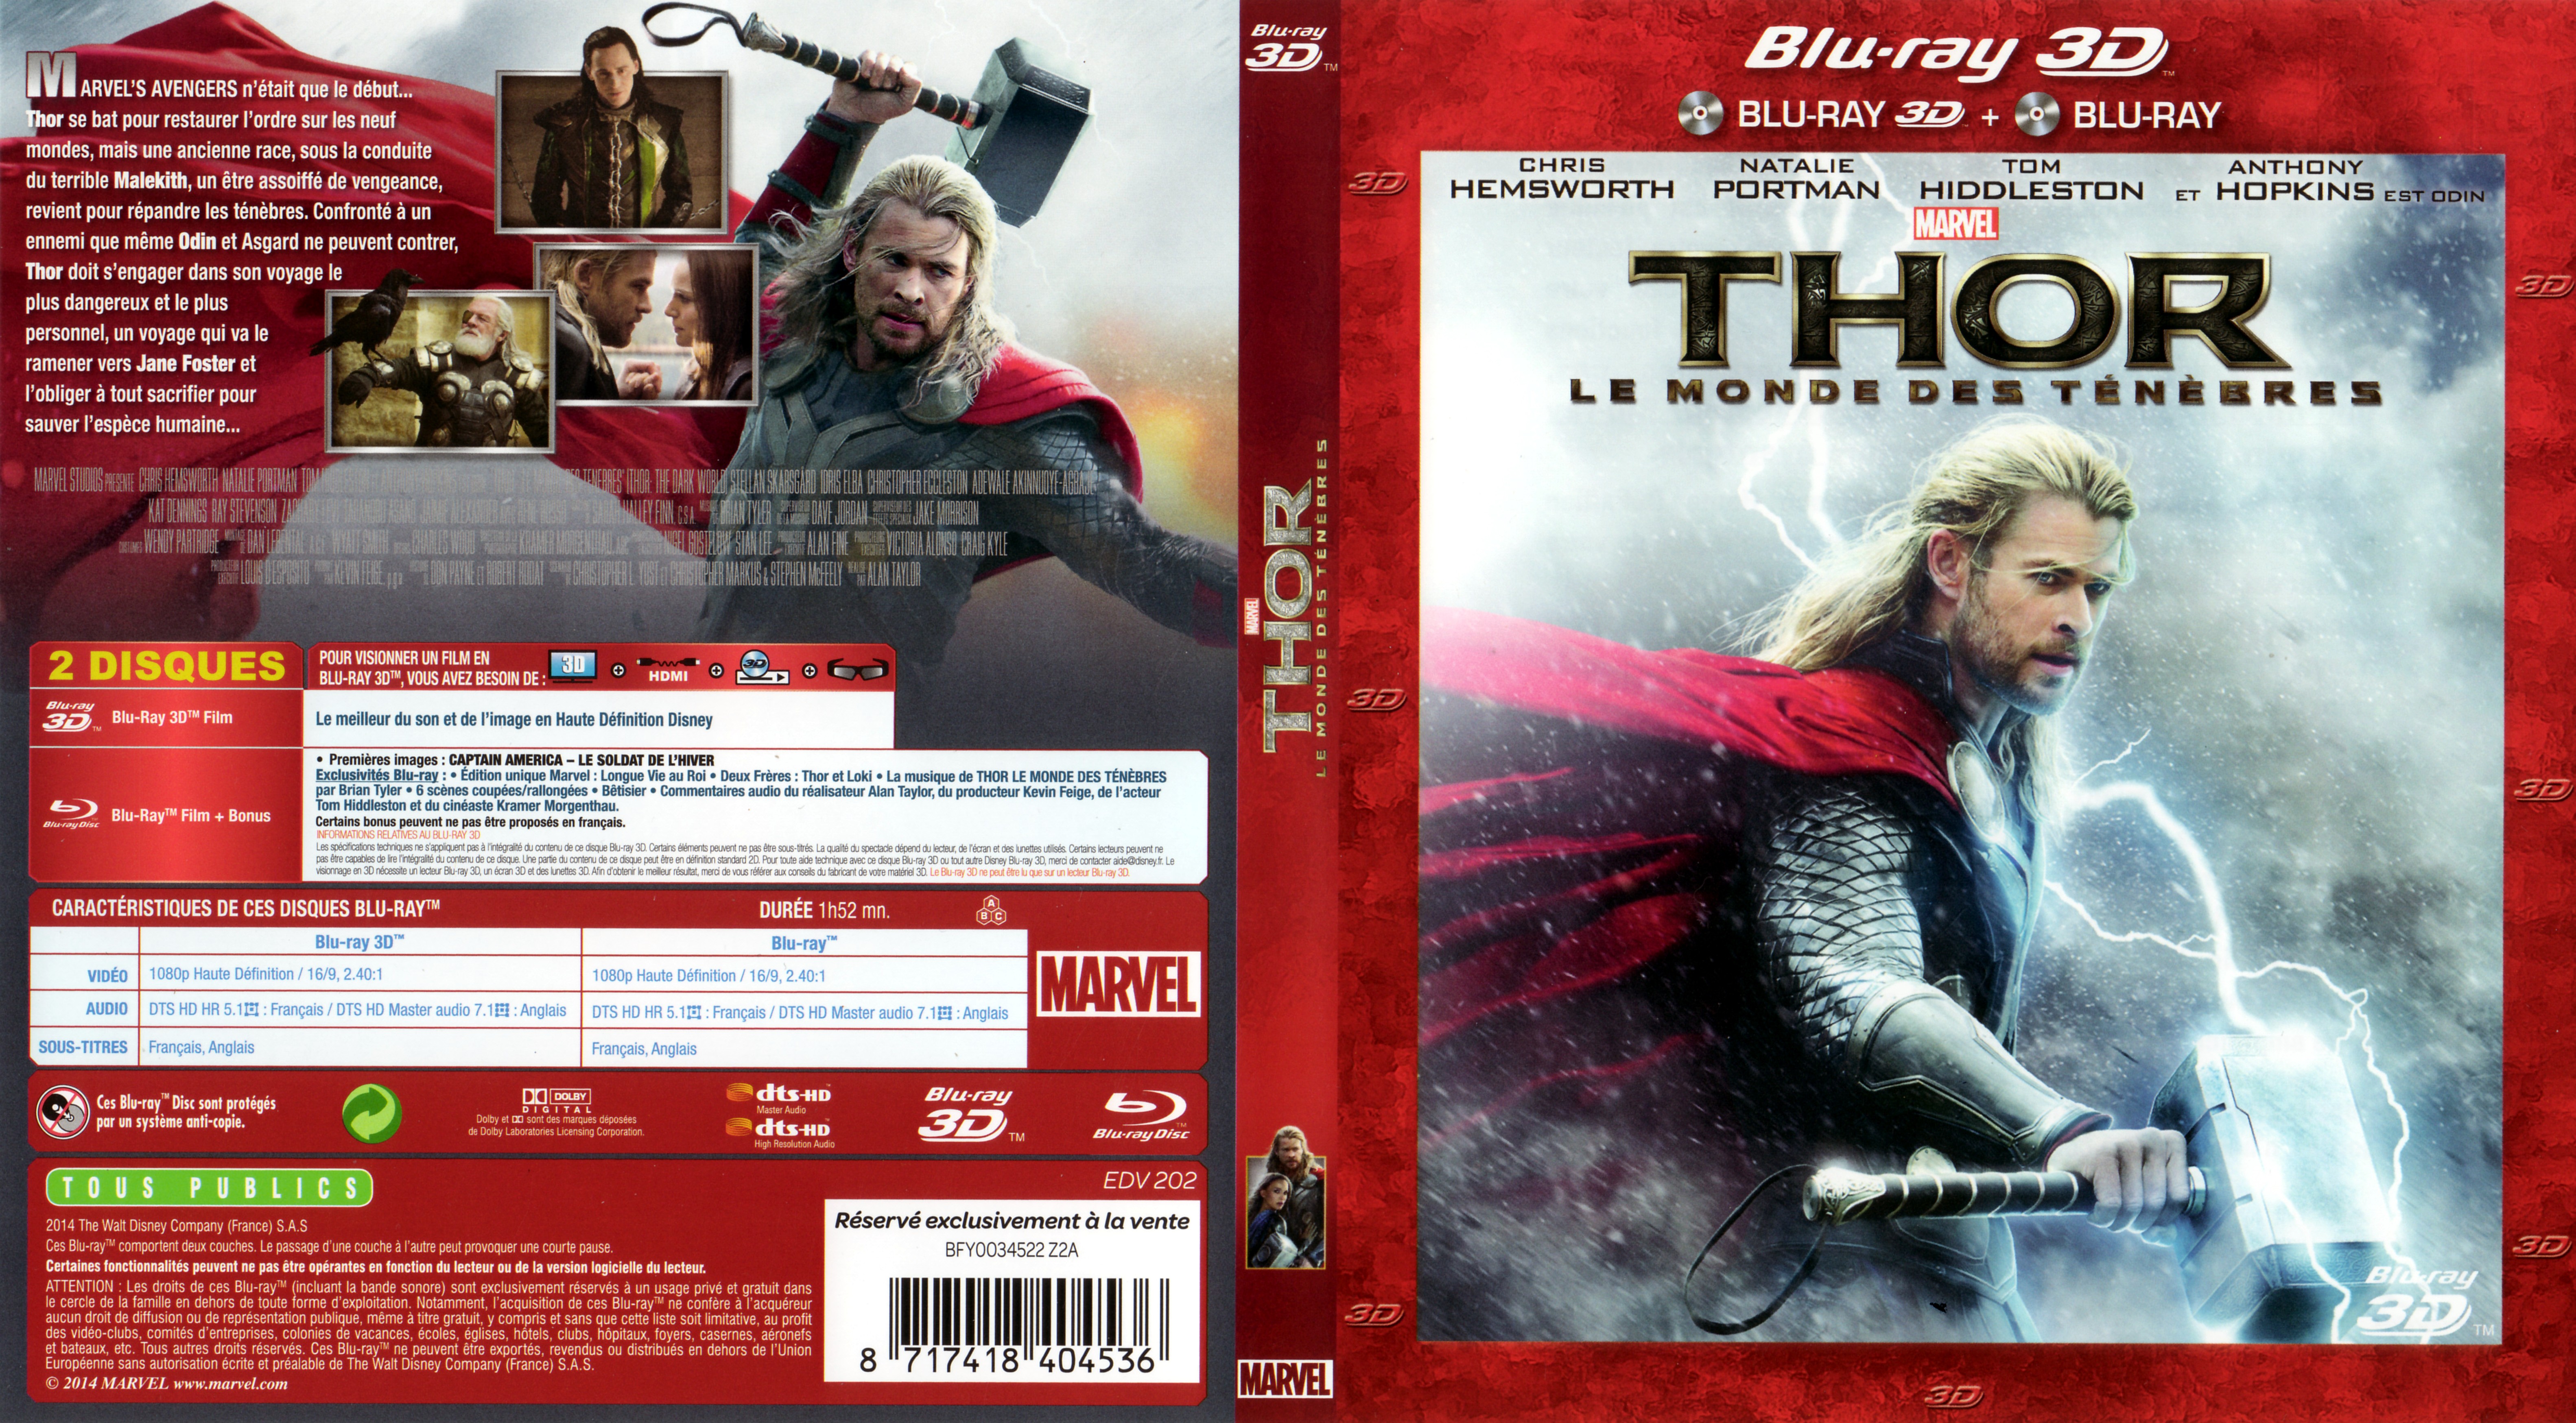 Jaquette DVD Thor : Le Monde des tnbres 3D (BLU-RAY)